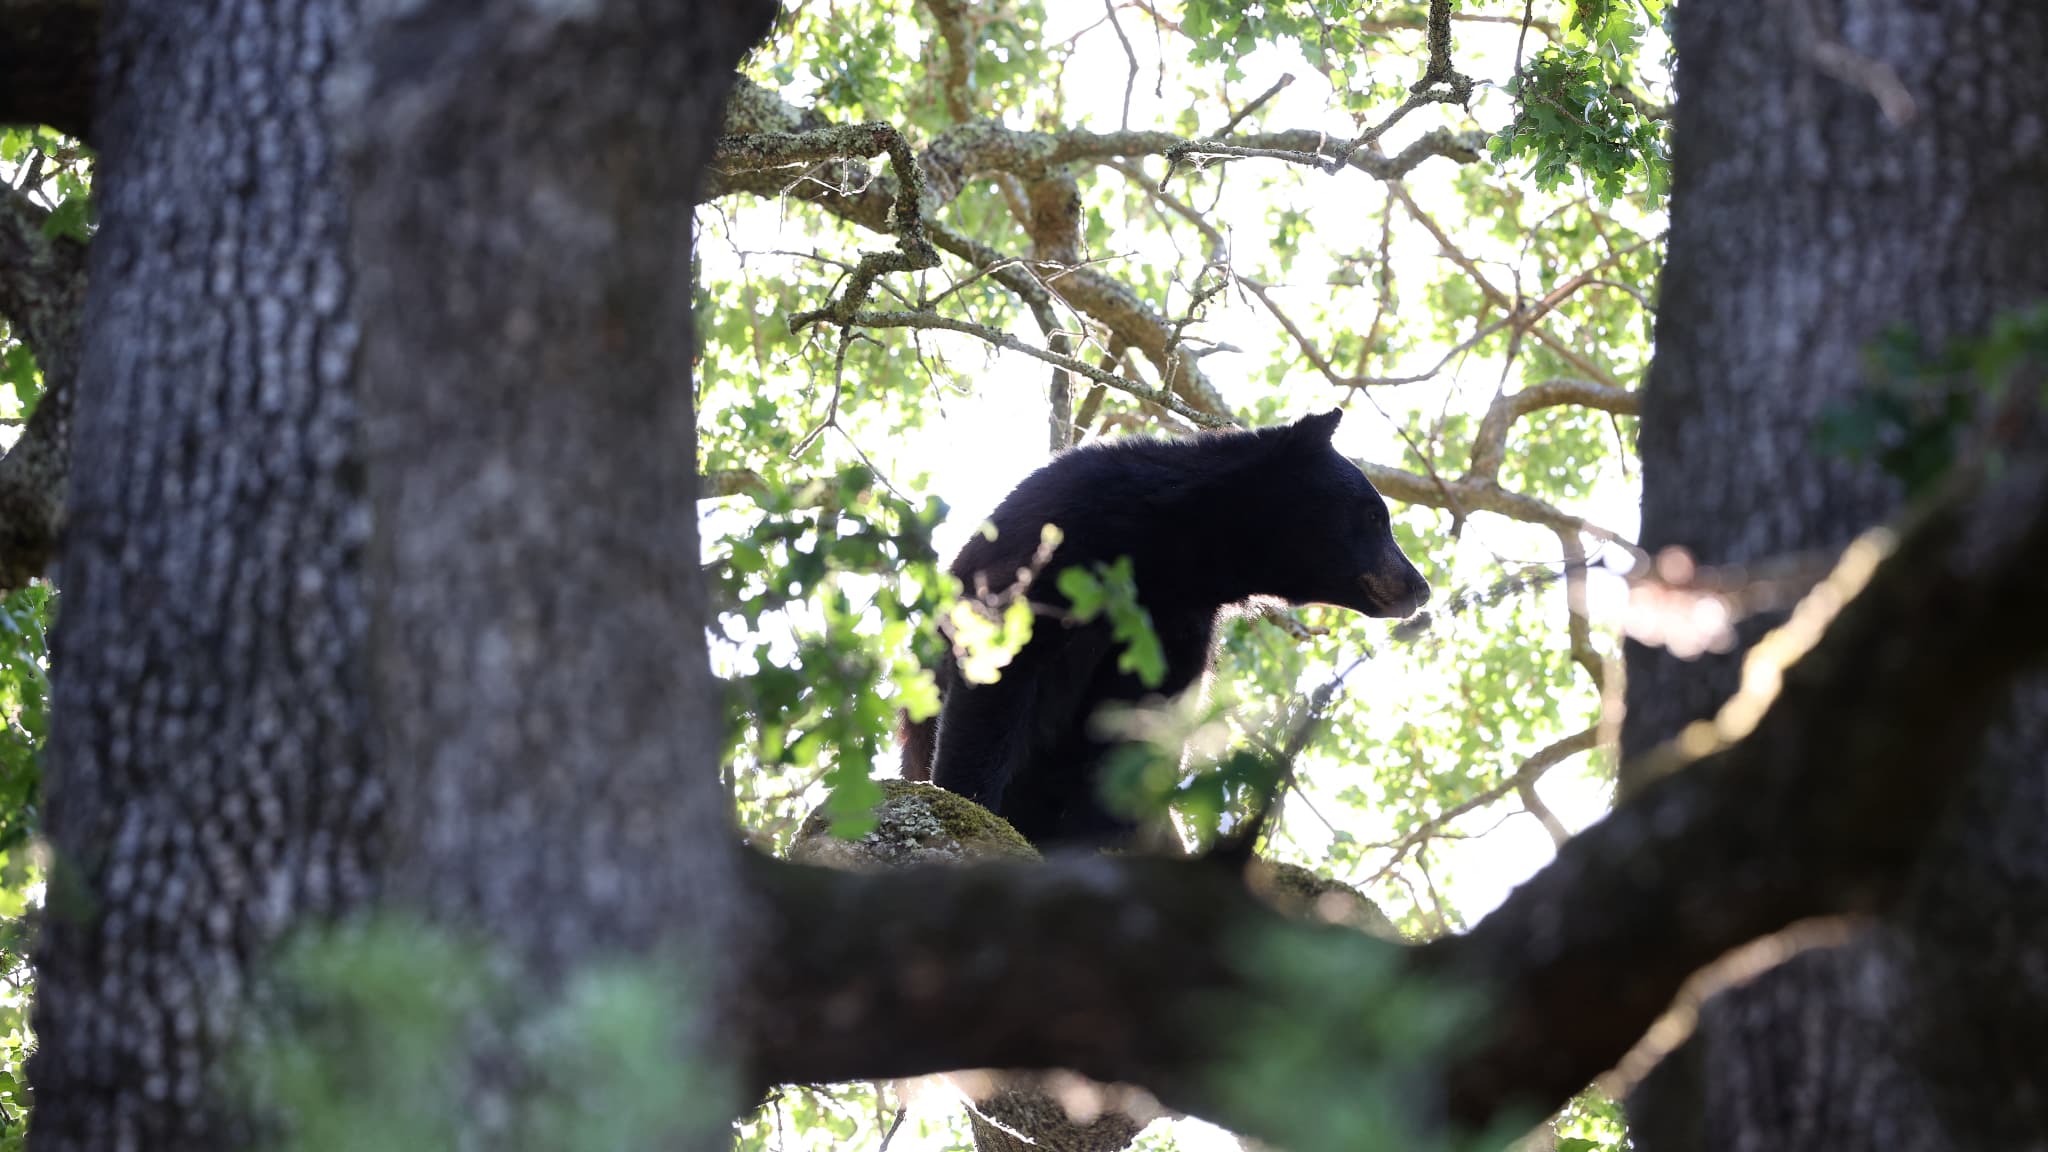 des oursons enlevés d'un arbre aux États-Unis afin de prendre des selfies